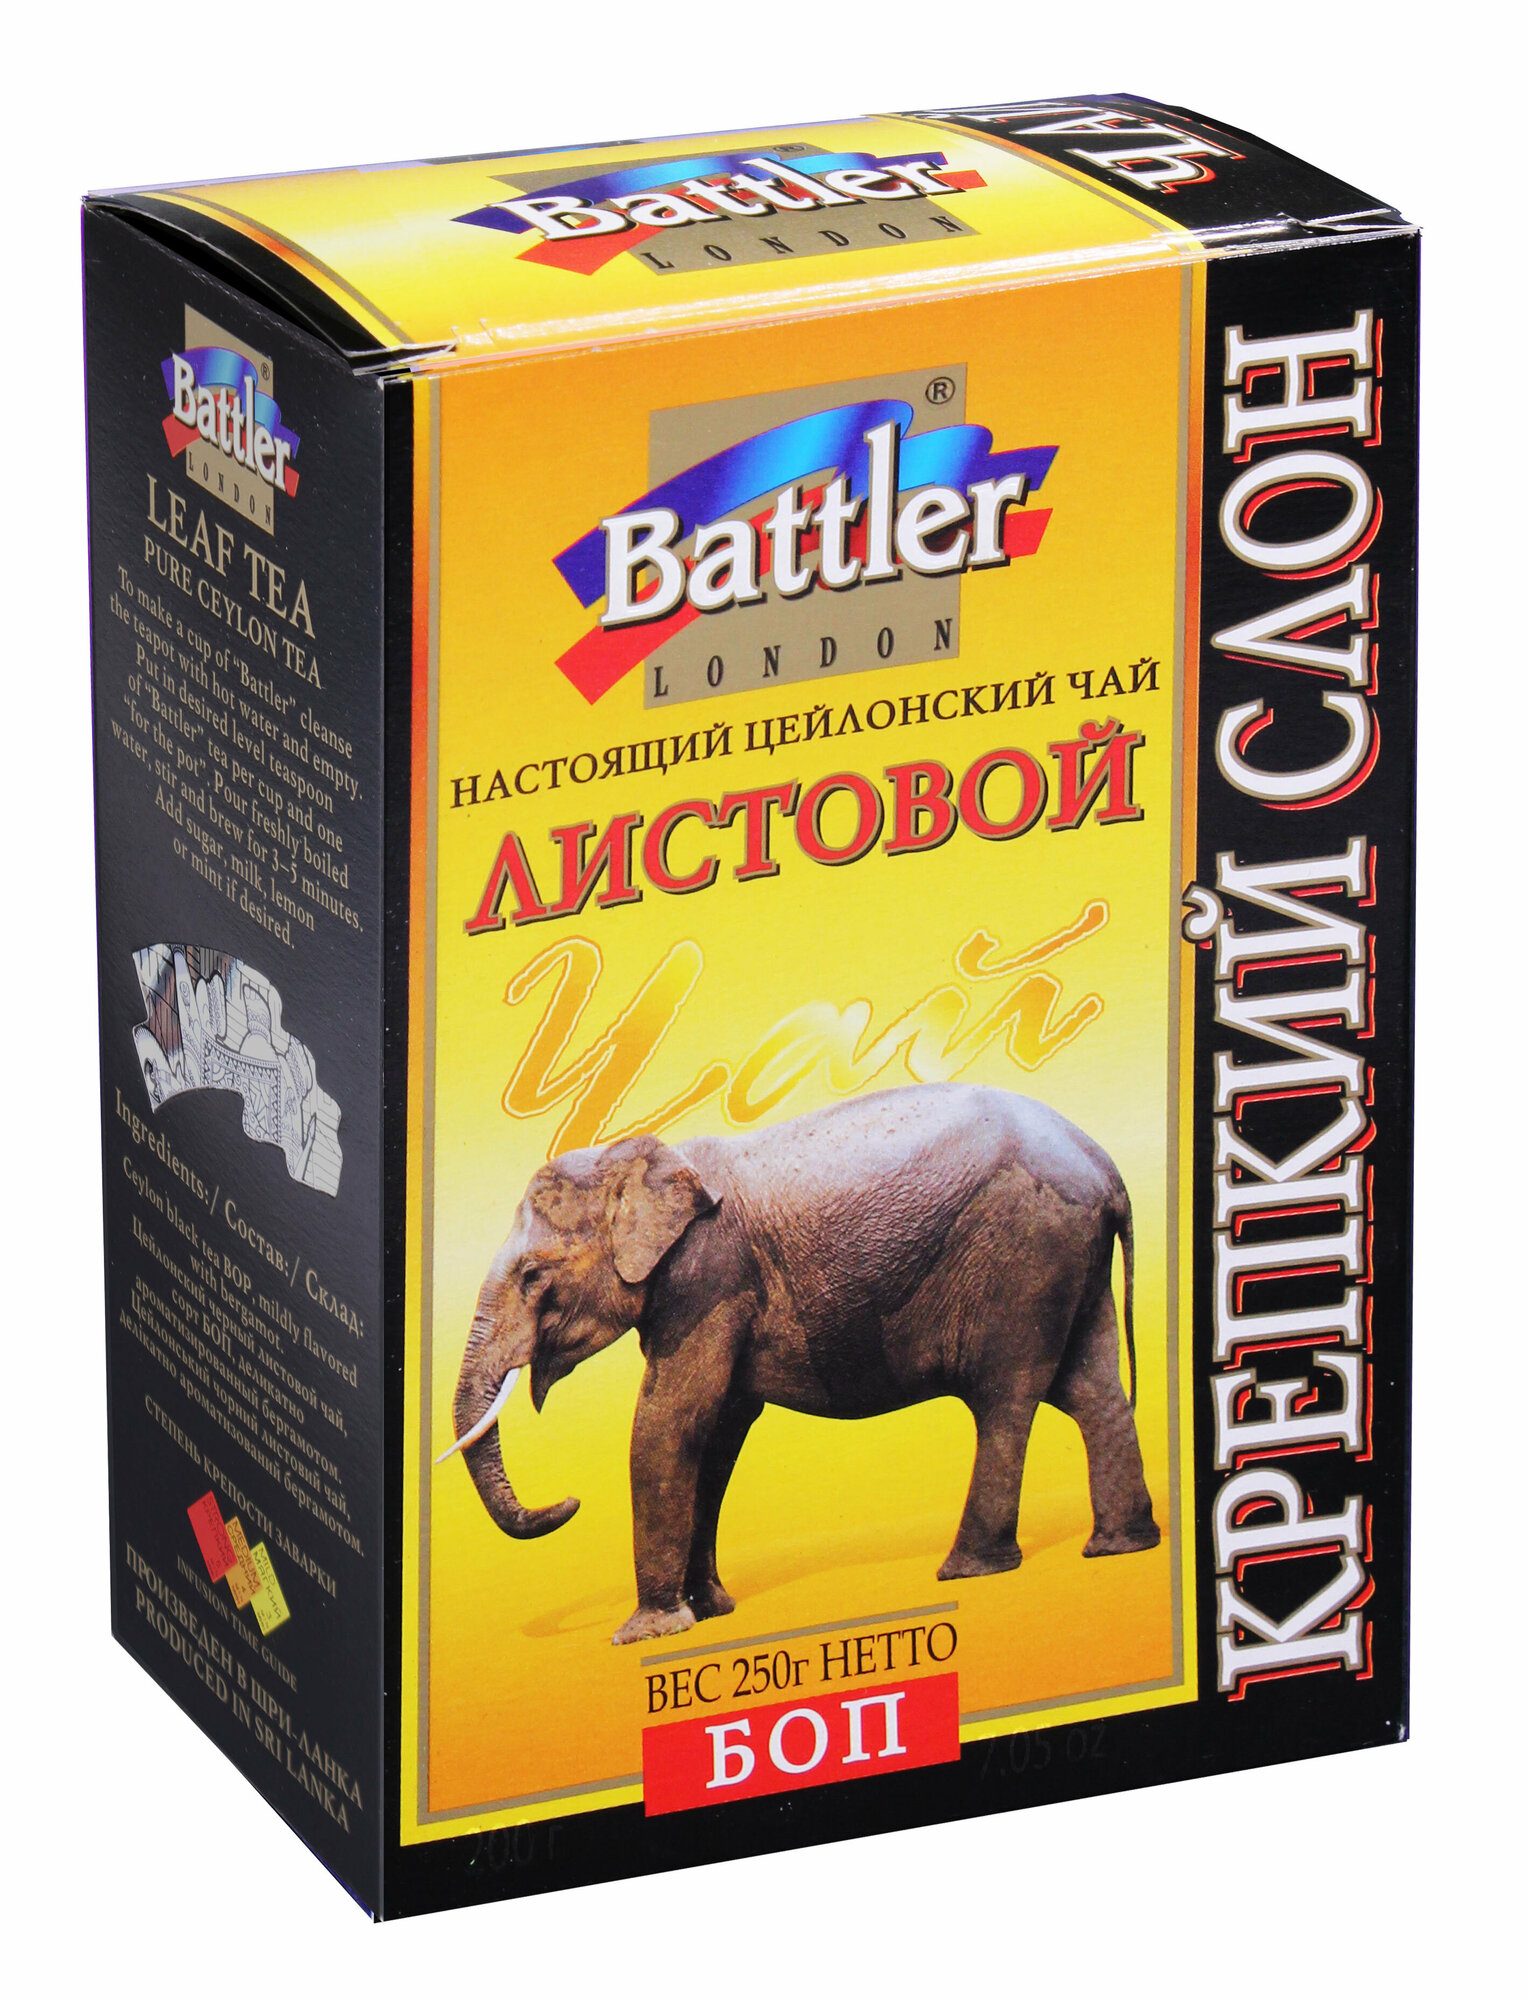 Чай баттлер Цейлонский черный(BOP) крепкий слон 250 г. лст.